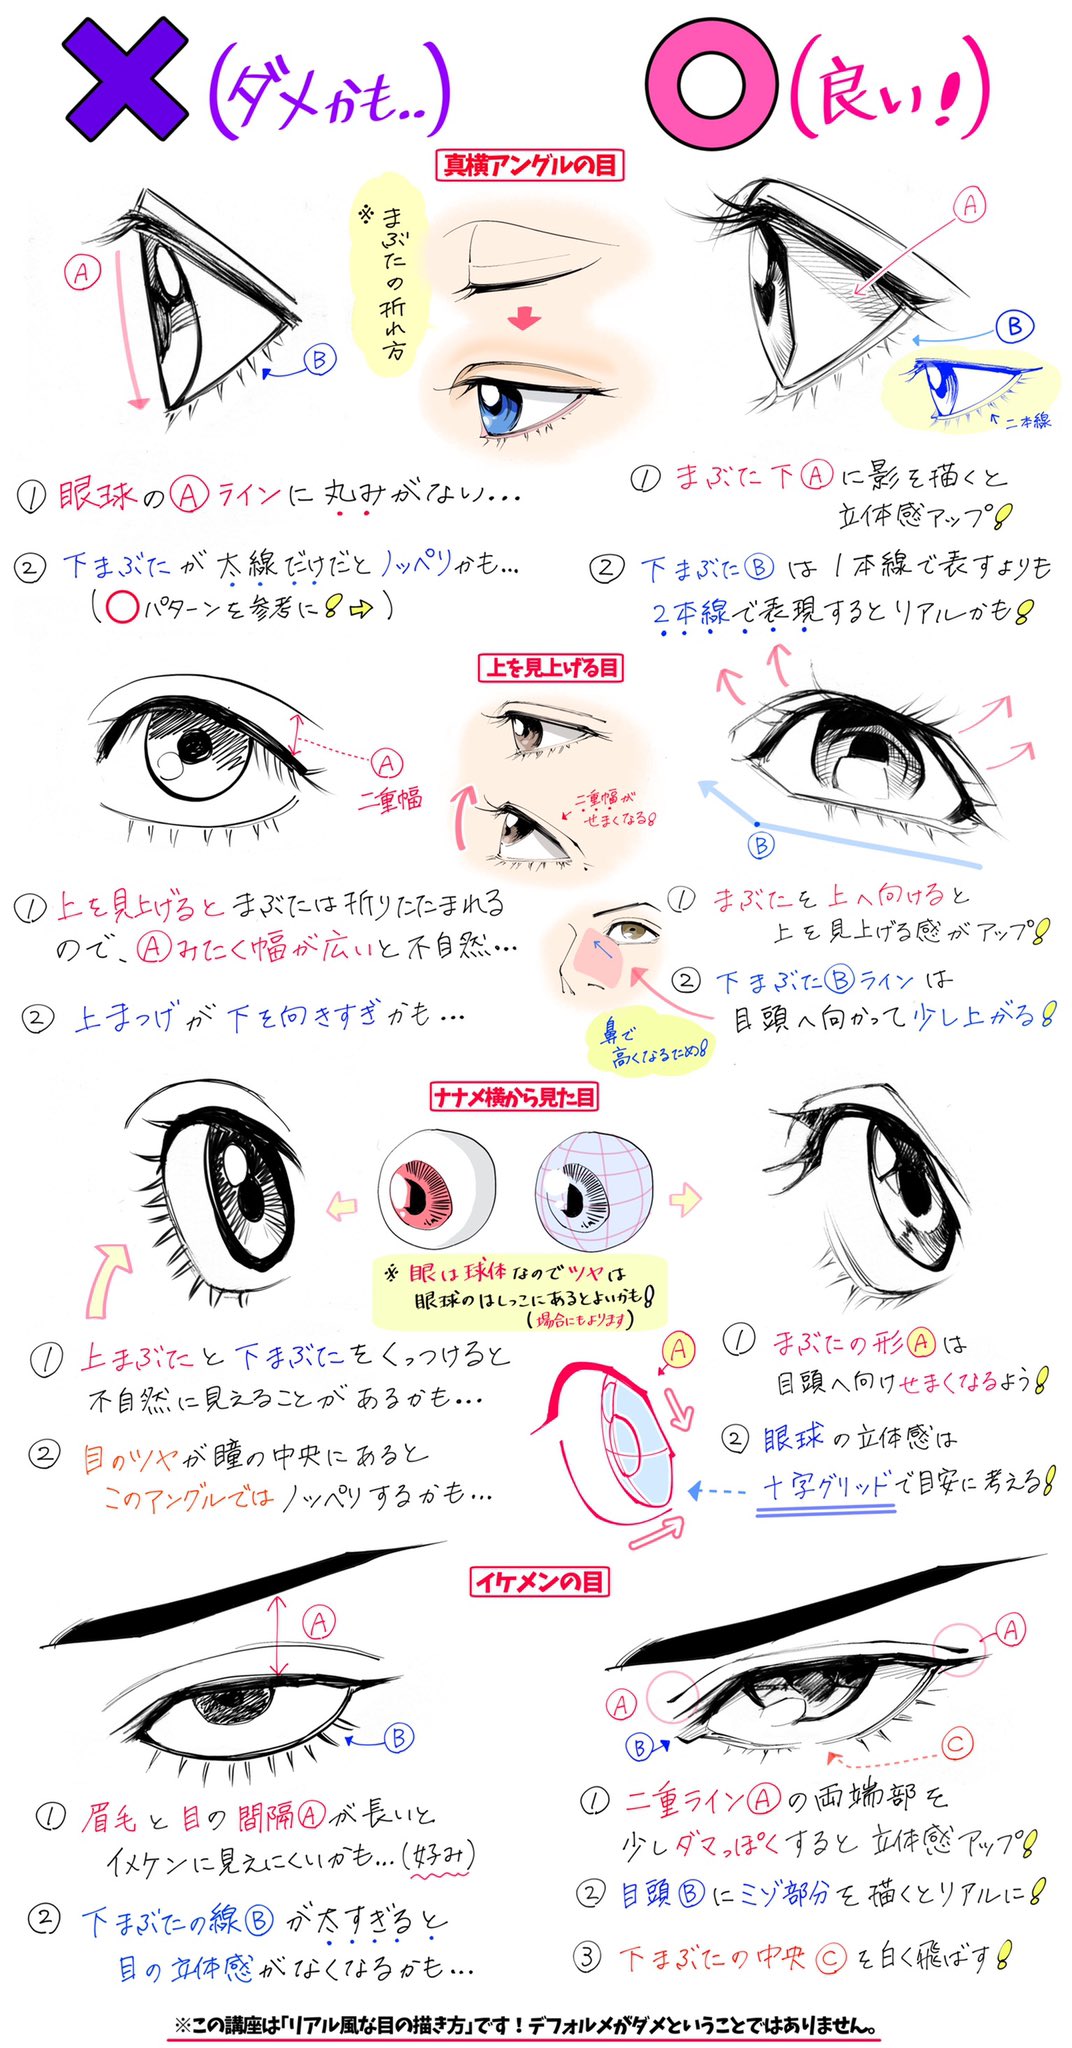 吉村拓也 イラスト講座 目の描き方が苦手な人へ 目の角度や瞳のツヤ感 が上達する ダメかも と いいかも